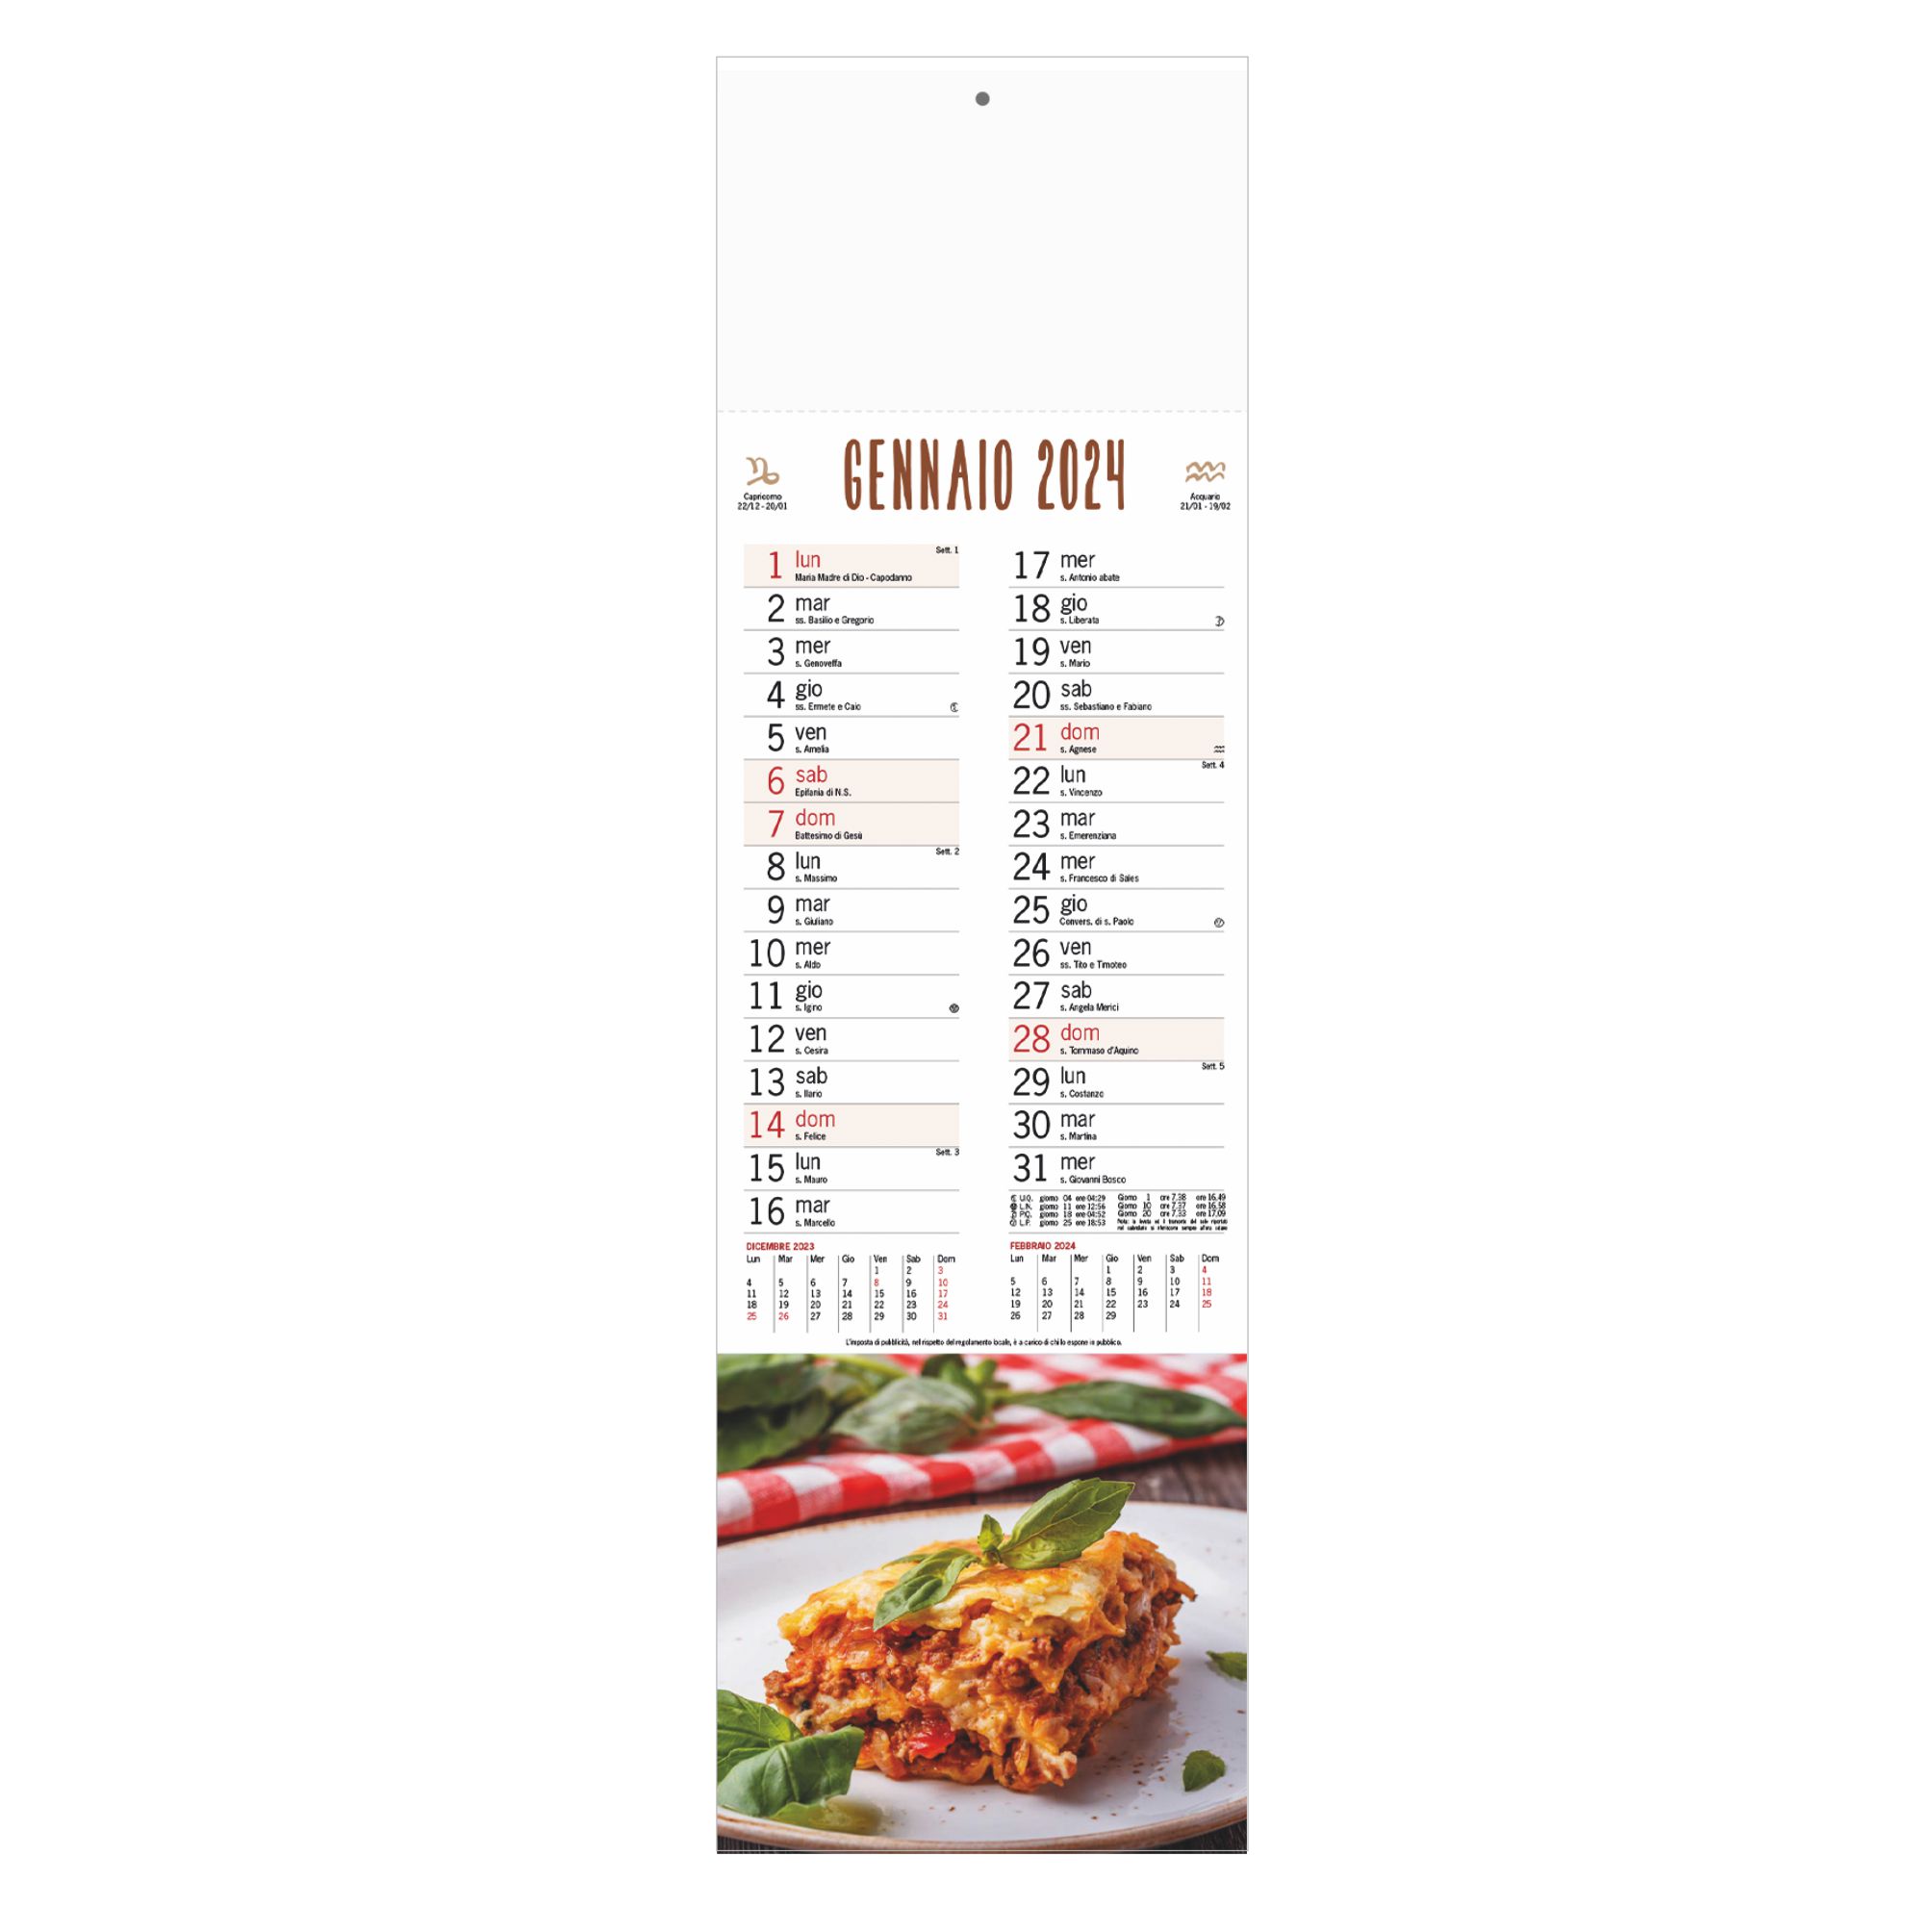 b-10-calendario-gastronomia-nc.jpg